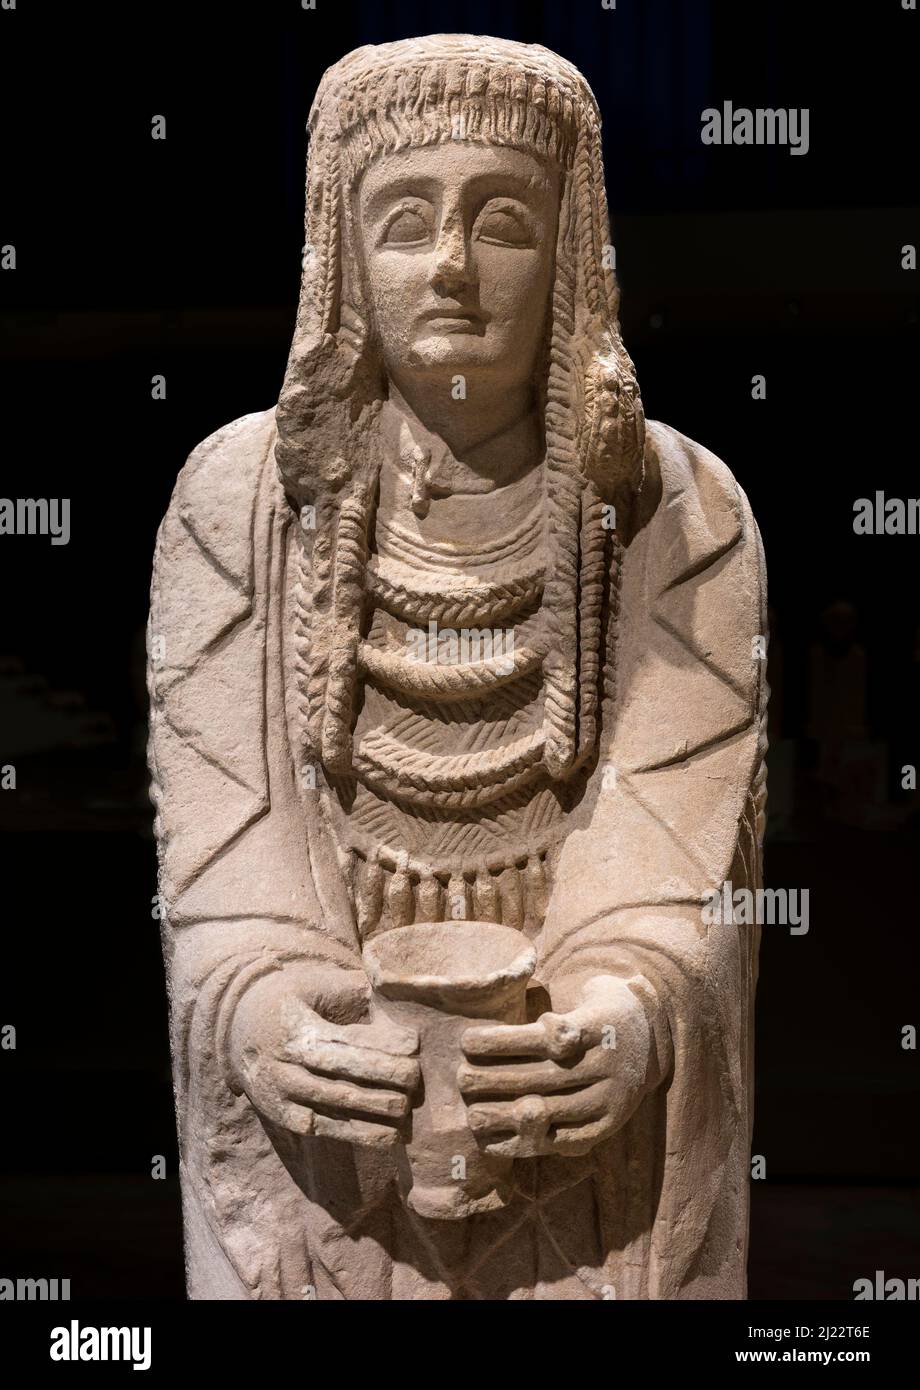 The Great Lady Offerant, eine Kalksteinstatue einer jungen Frau, die einer Gottheit als Teil eines Übergangs von der Kindheit zur Frauenschaft präsentiert wird, 3 Stockfoto